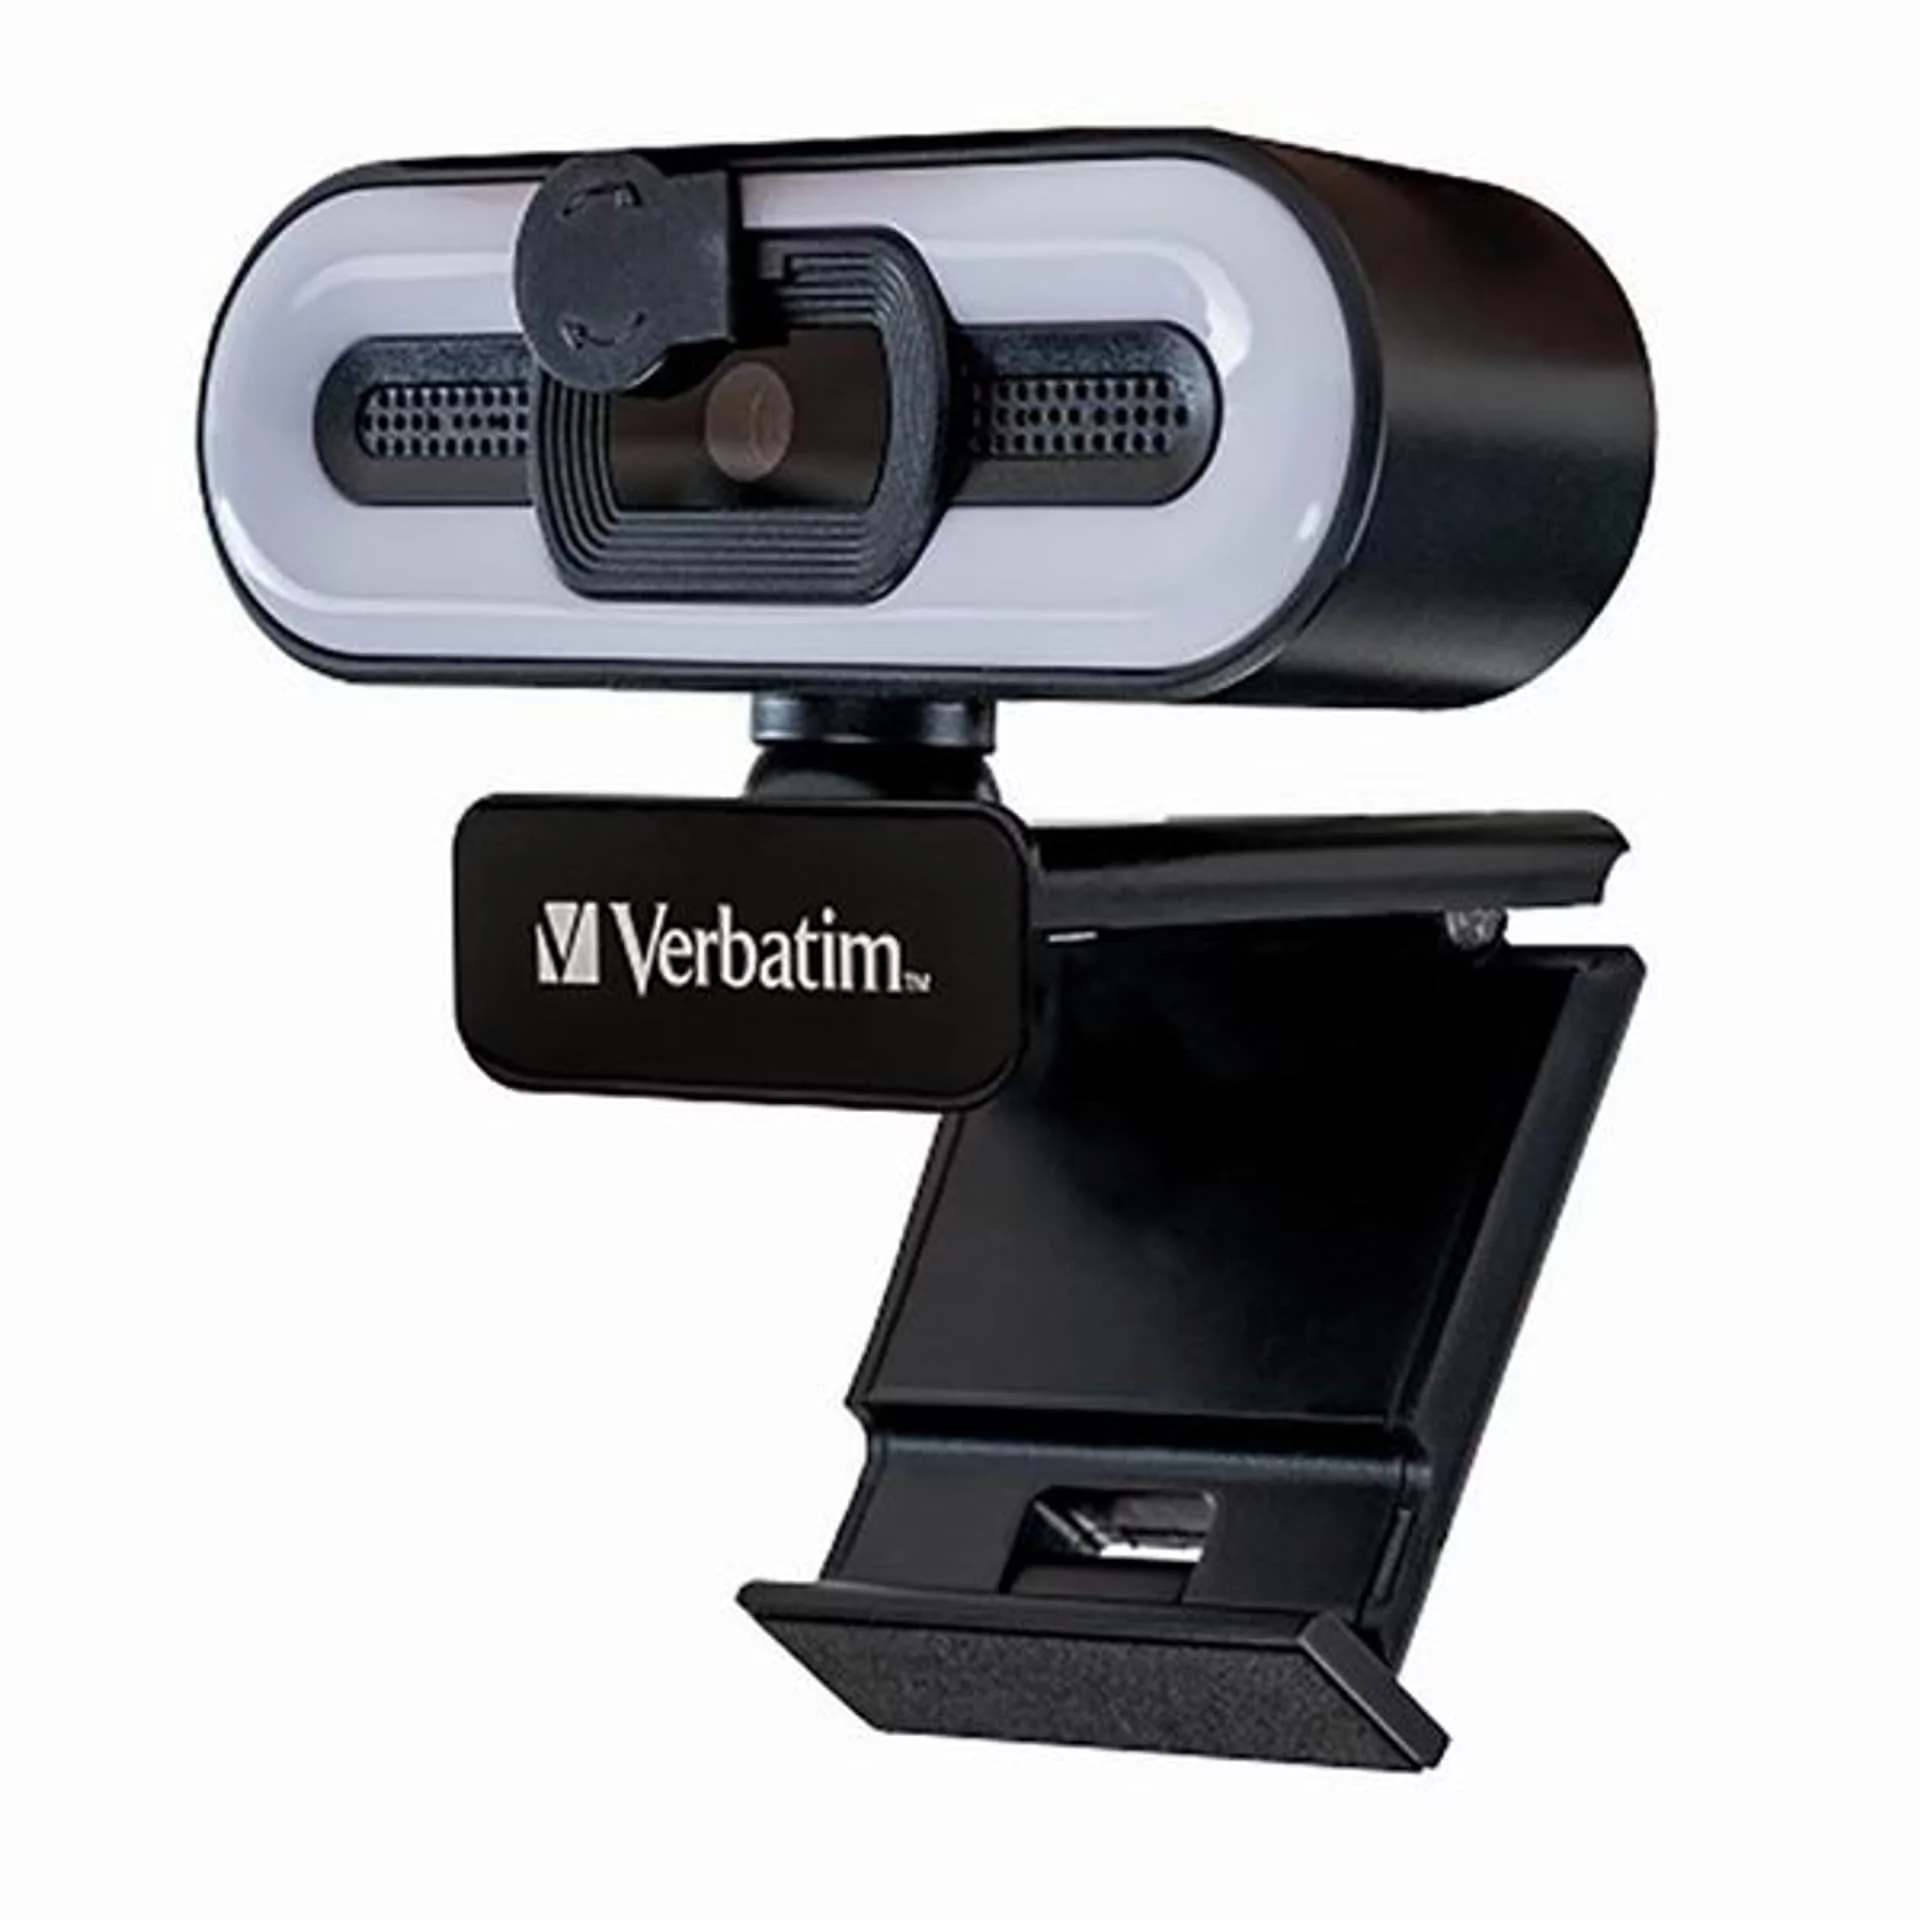 Verbatim kamera web Full HD 2560x1440, 1920x1080, USB 2.0, czarna, Windows, Mac OS X, Linux kernel, Android Chrome, FULL HD, 30 FP